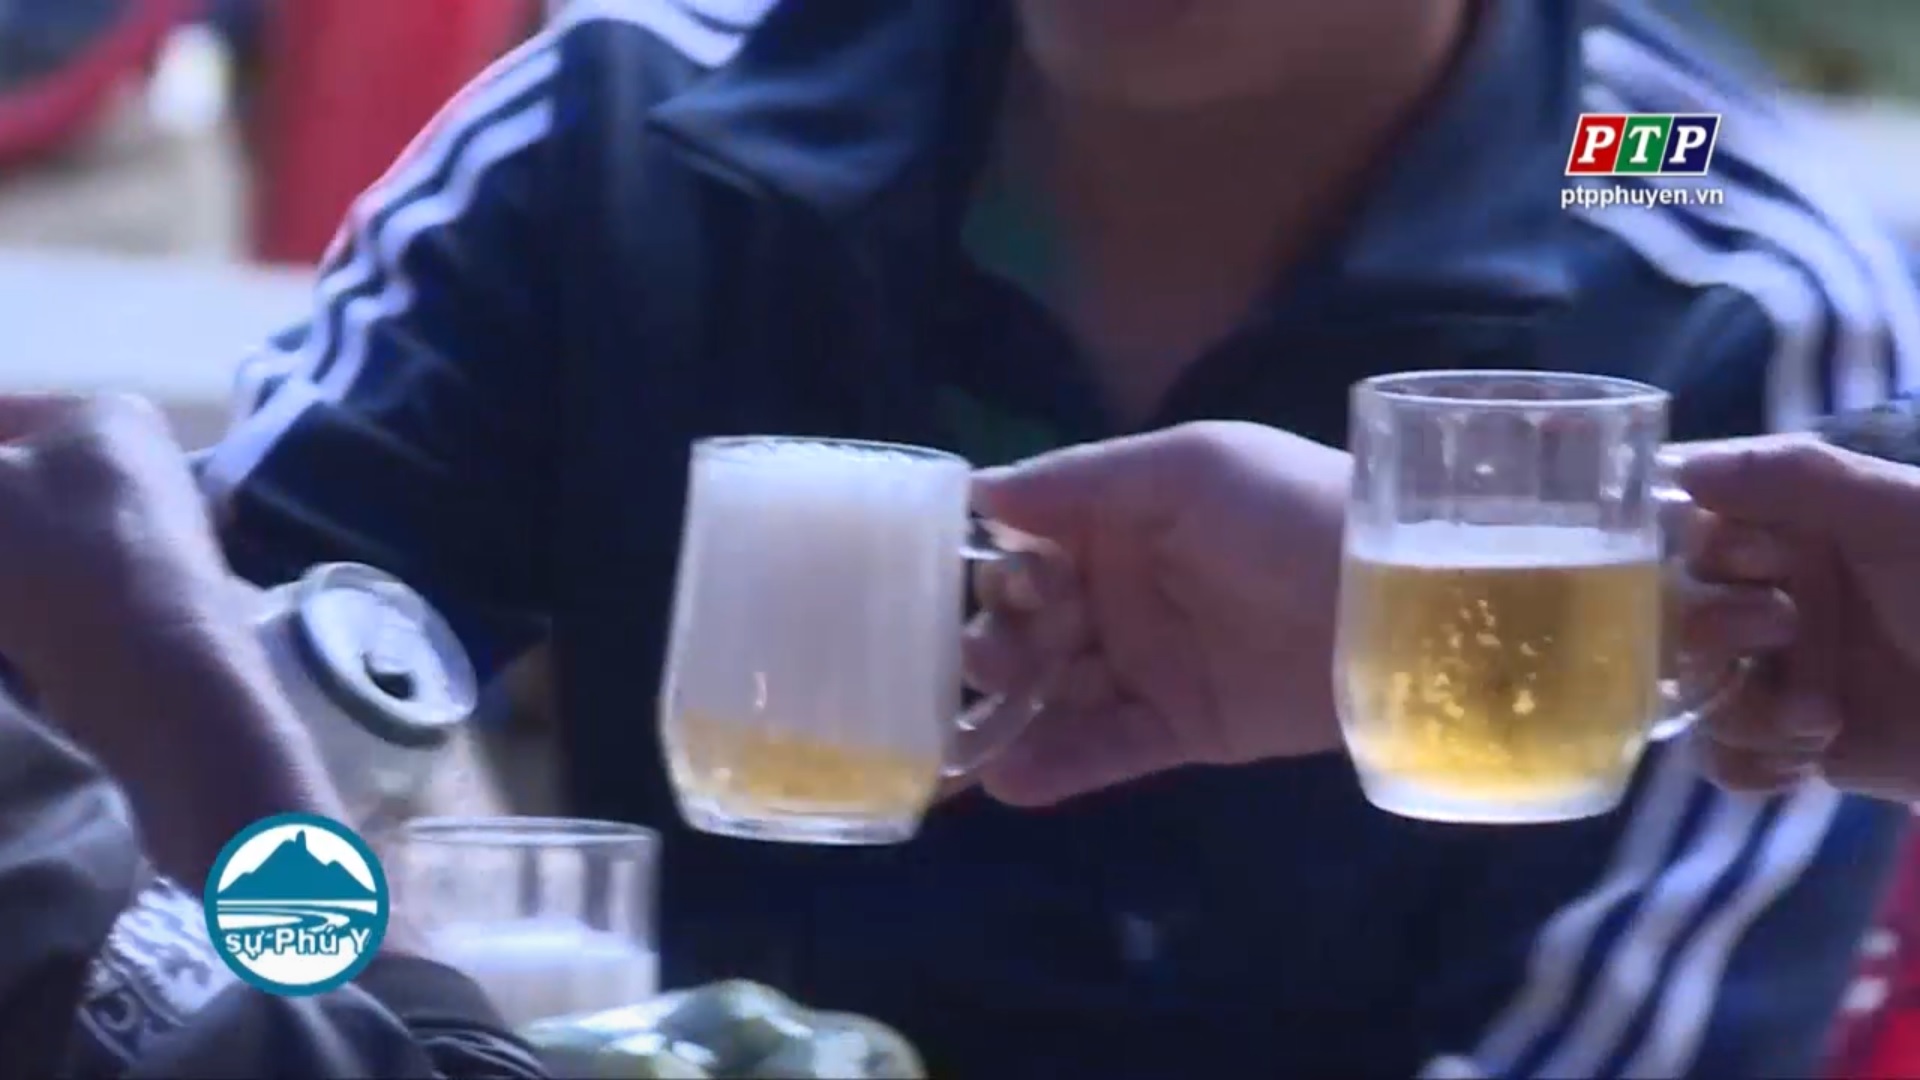 Luật phòng chống tác hại rượu bia có hiệu lực - người dân đón nhận thế nào?